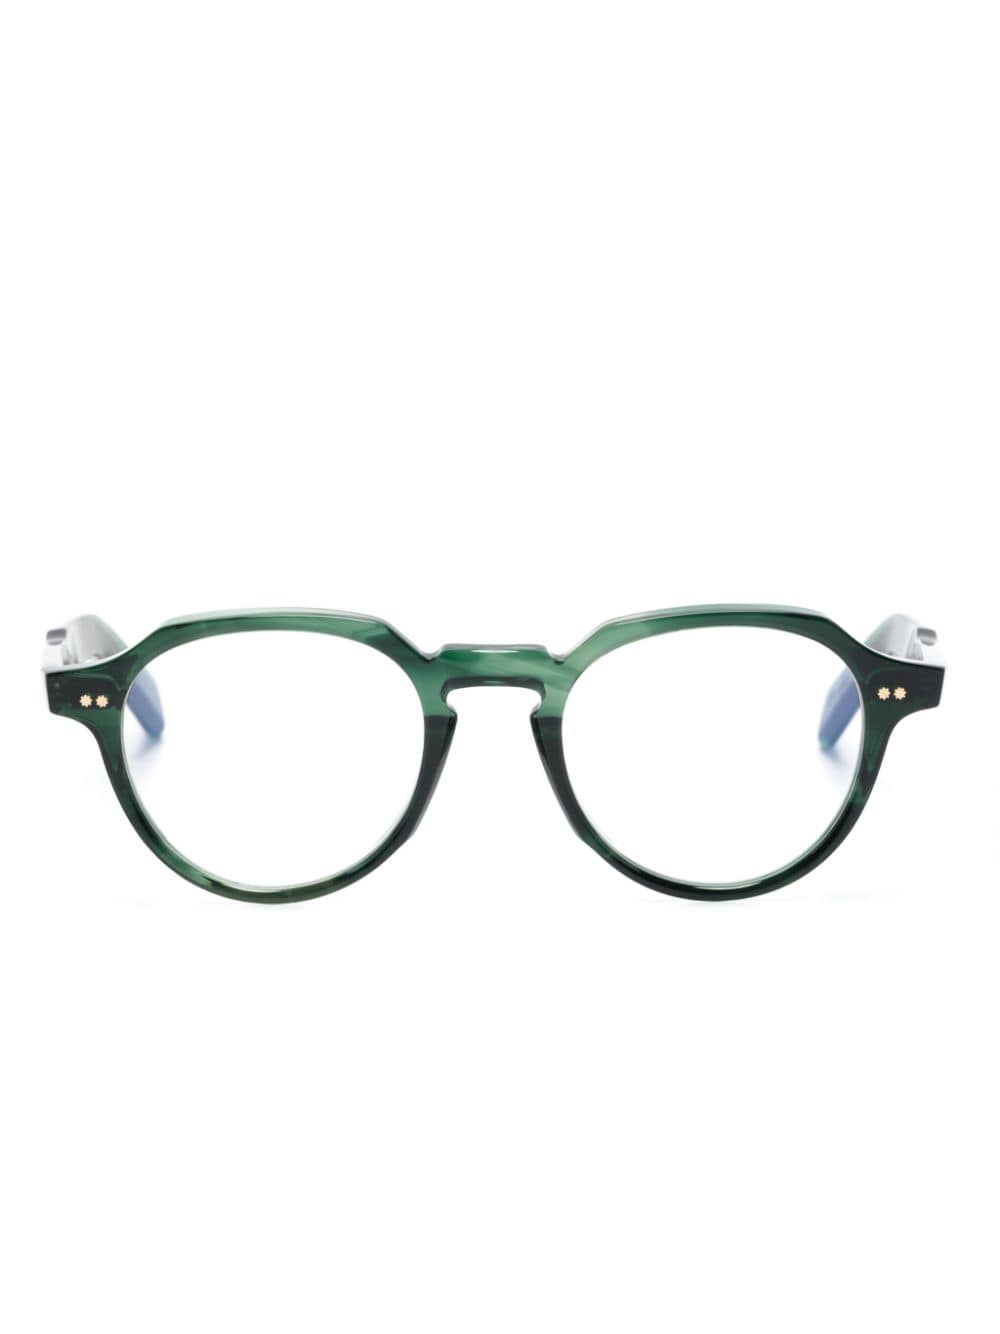 Cutler & Gross GR06 round-frame glasses - Green von Cutler & Gross